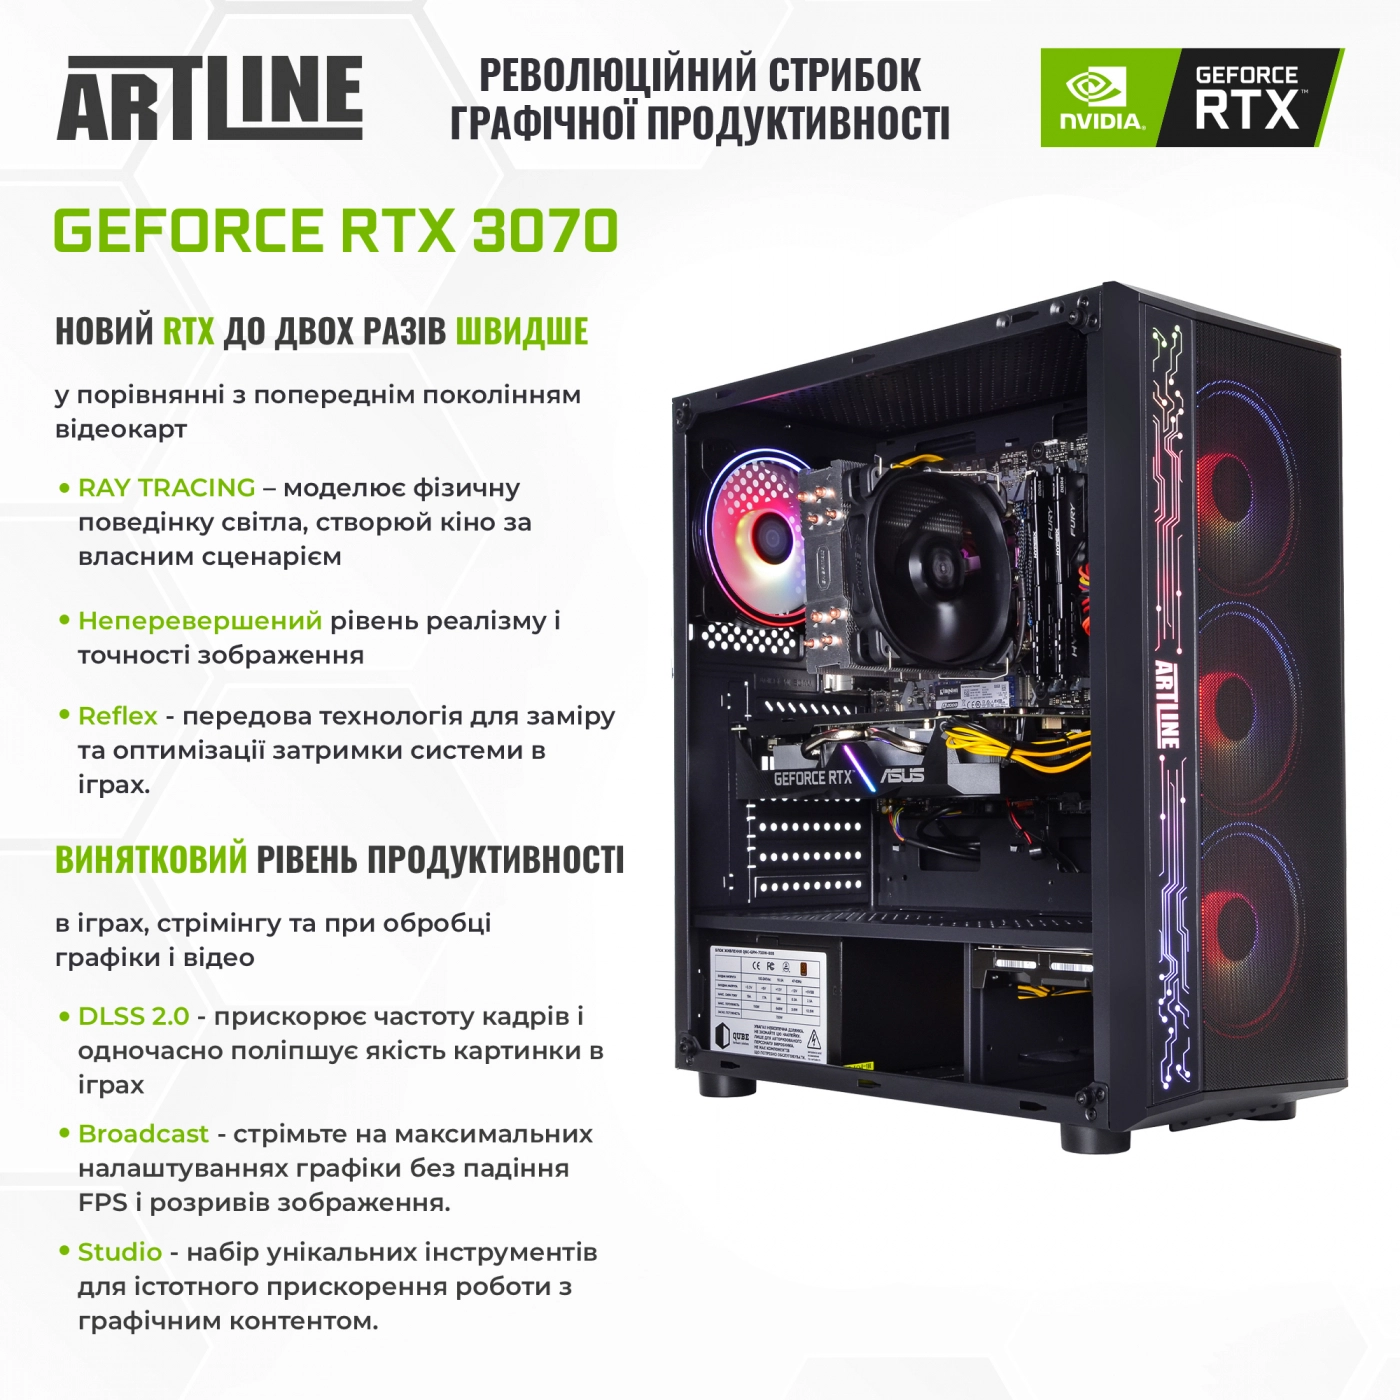 Купить Компьютер ARTLINE Gaming X85v07 - фото 3